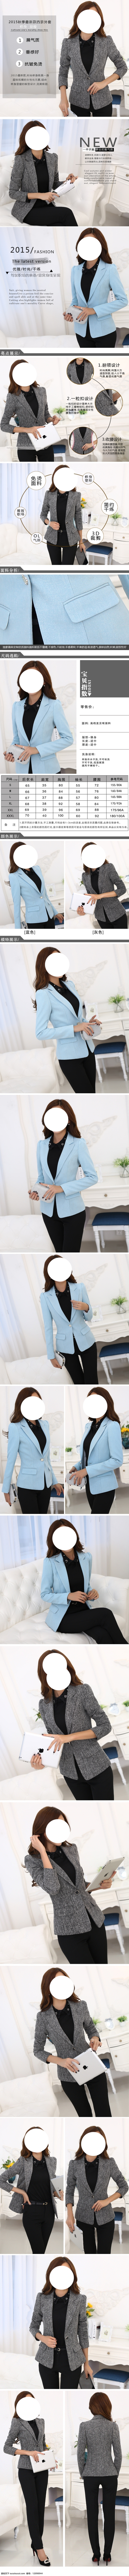 韩 版 女士 西装 描述 详情 页 灰色 蓝色 详情页 新款 秋装 职业装 翻领 长袖 外套 新品 展示 白色